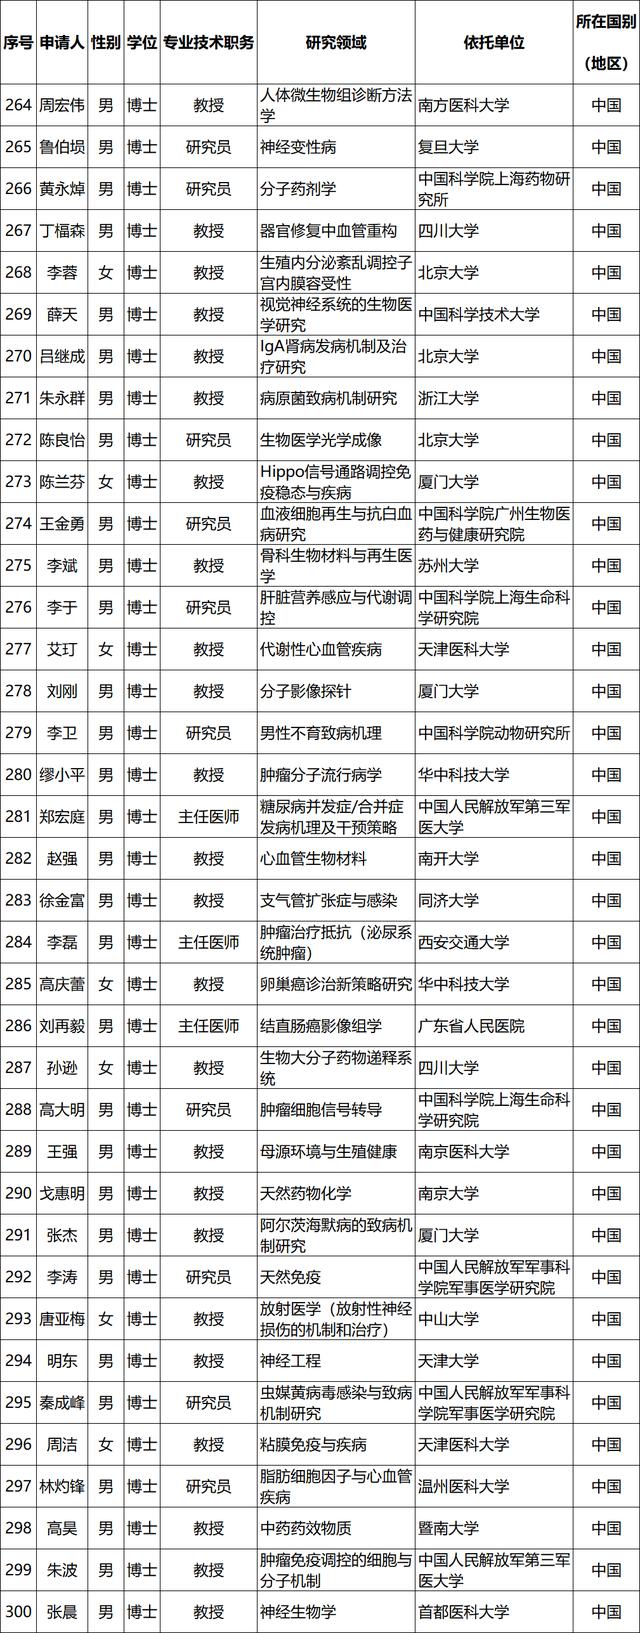 2019年国家杰青获得者名单公布 生物医药领域38人入选